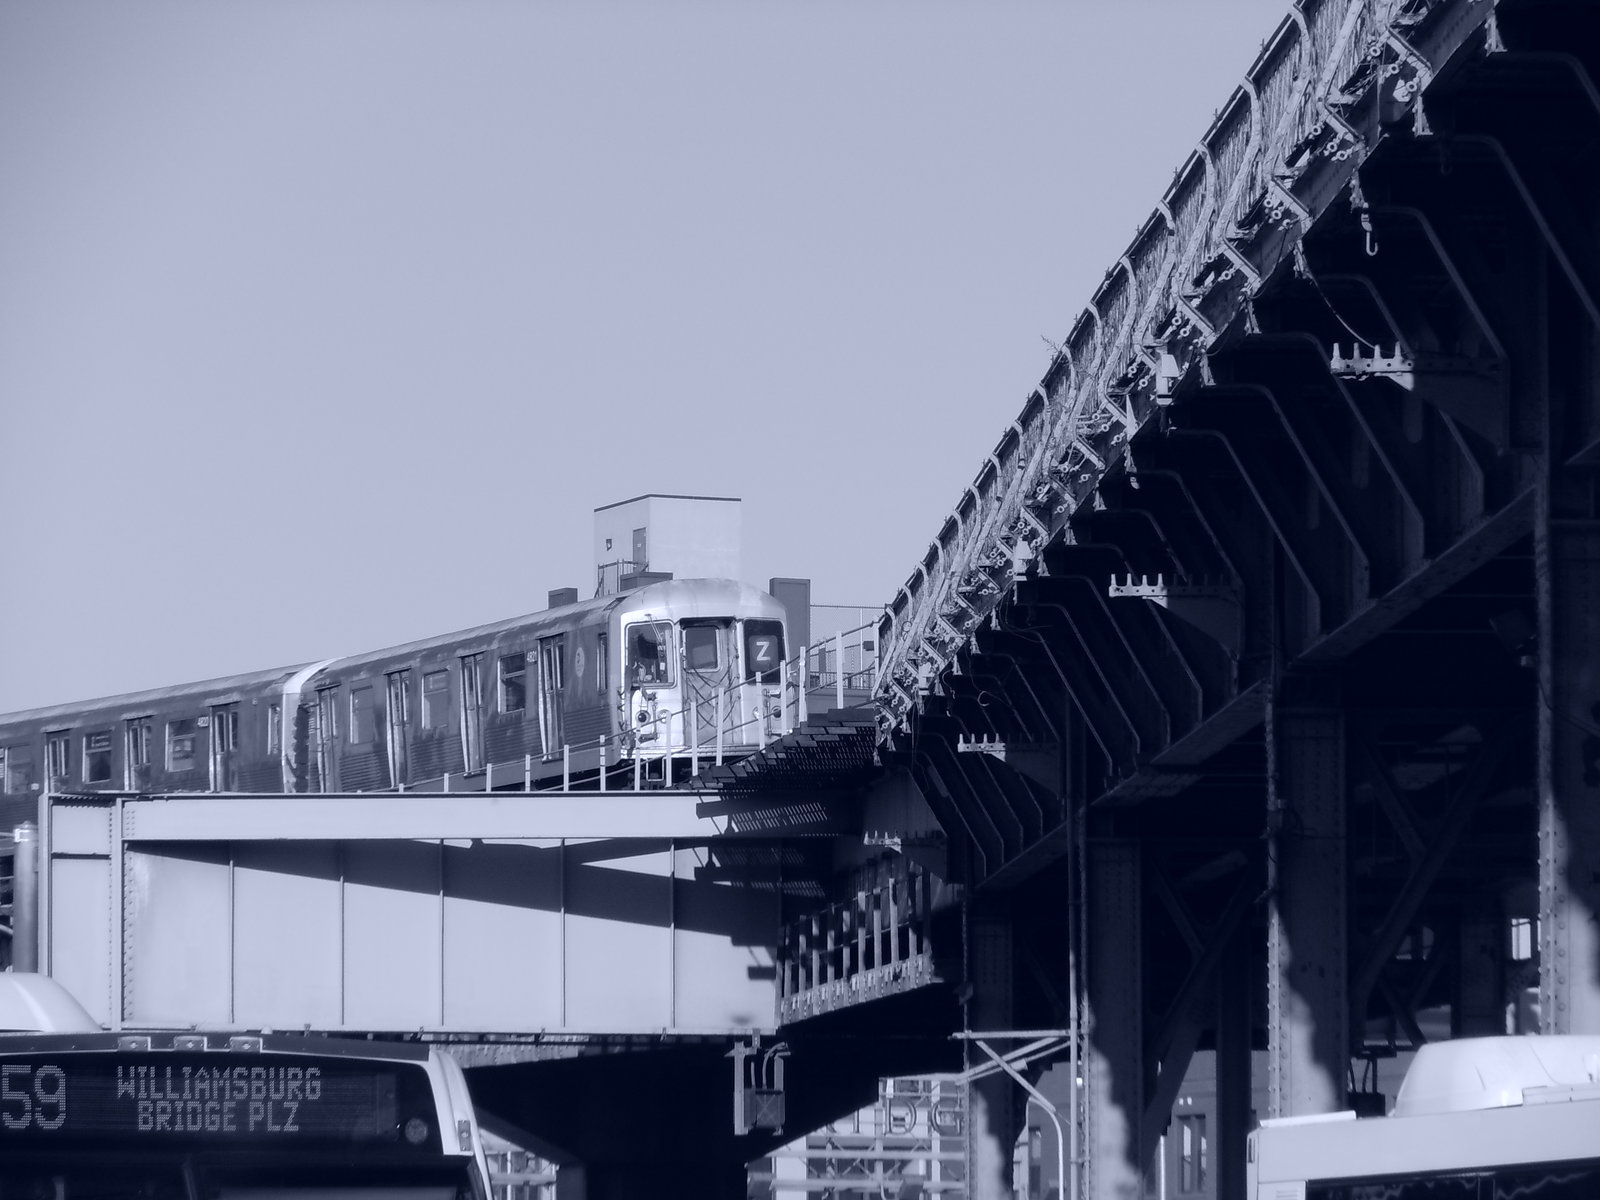 Z Train In Williamsburg Brooklyn By Brooklyn47